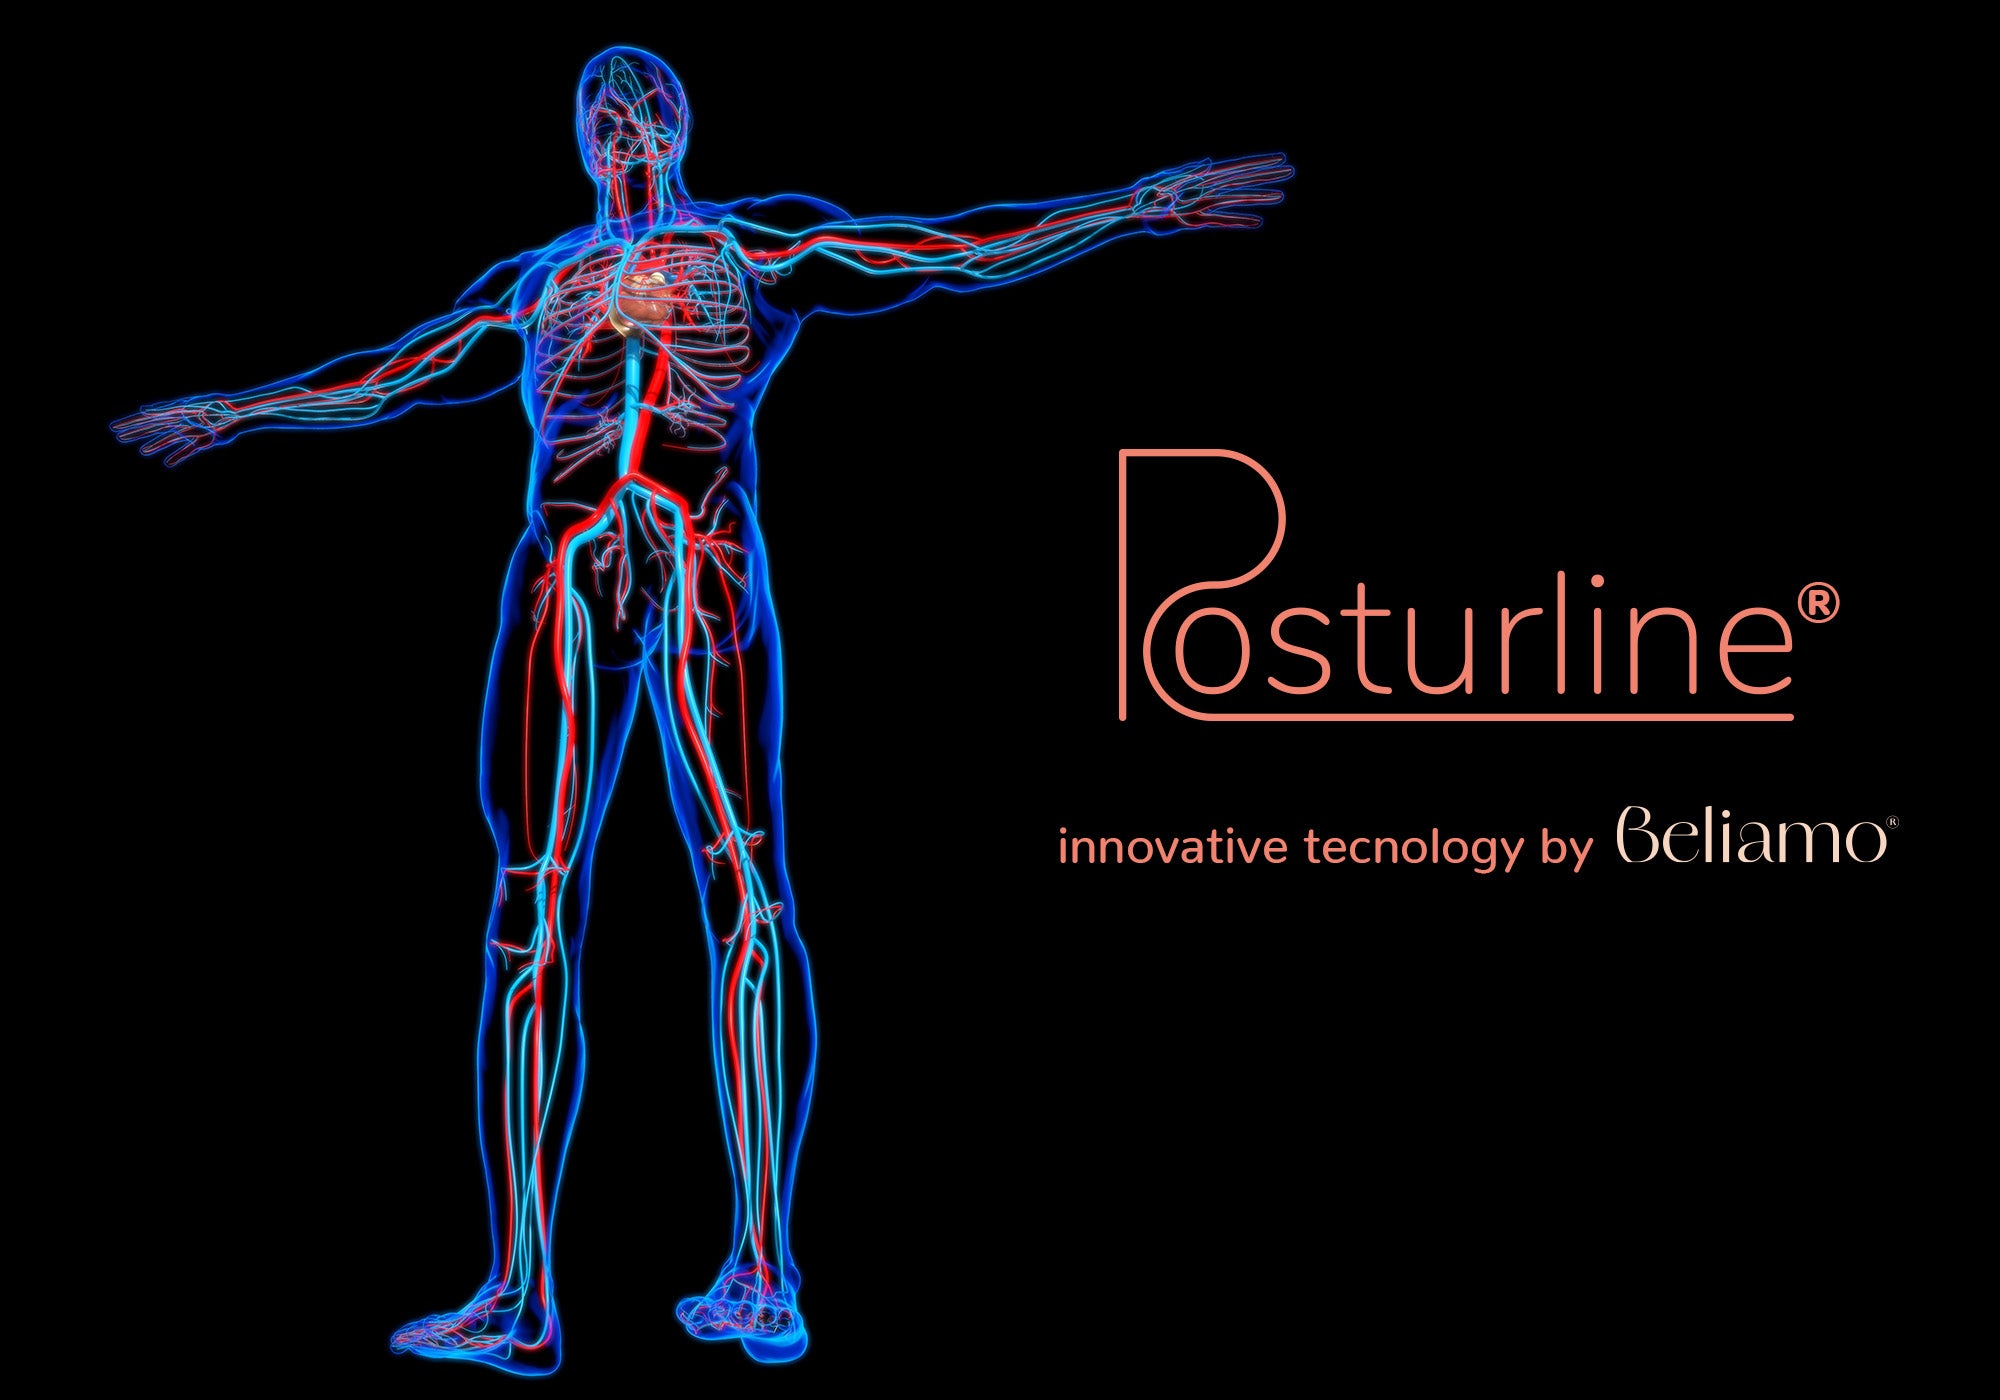 Circolazione sanguigna migliorata con tecnologia PosturLine di Beliamo, che mostra il supporto ottimale del materasso